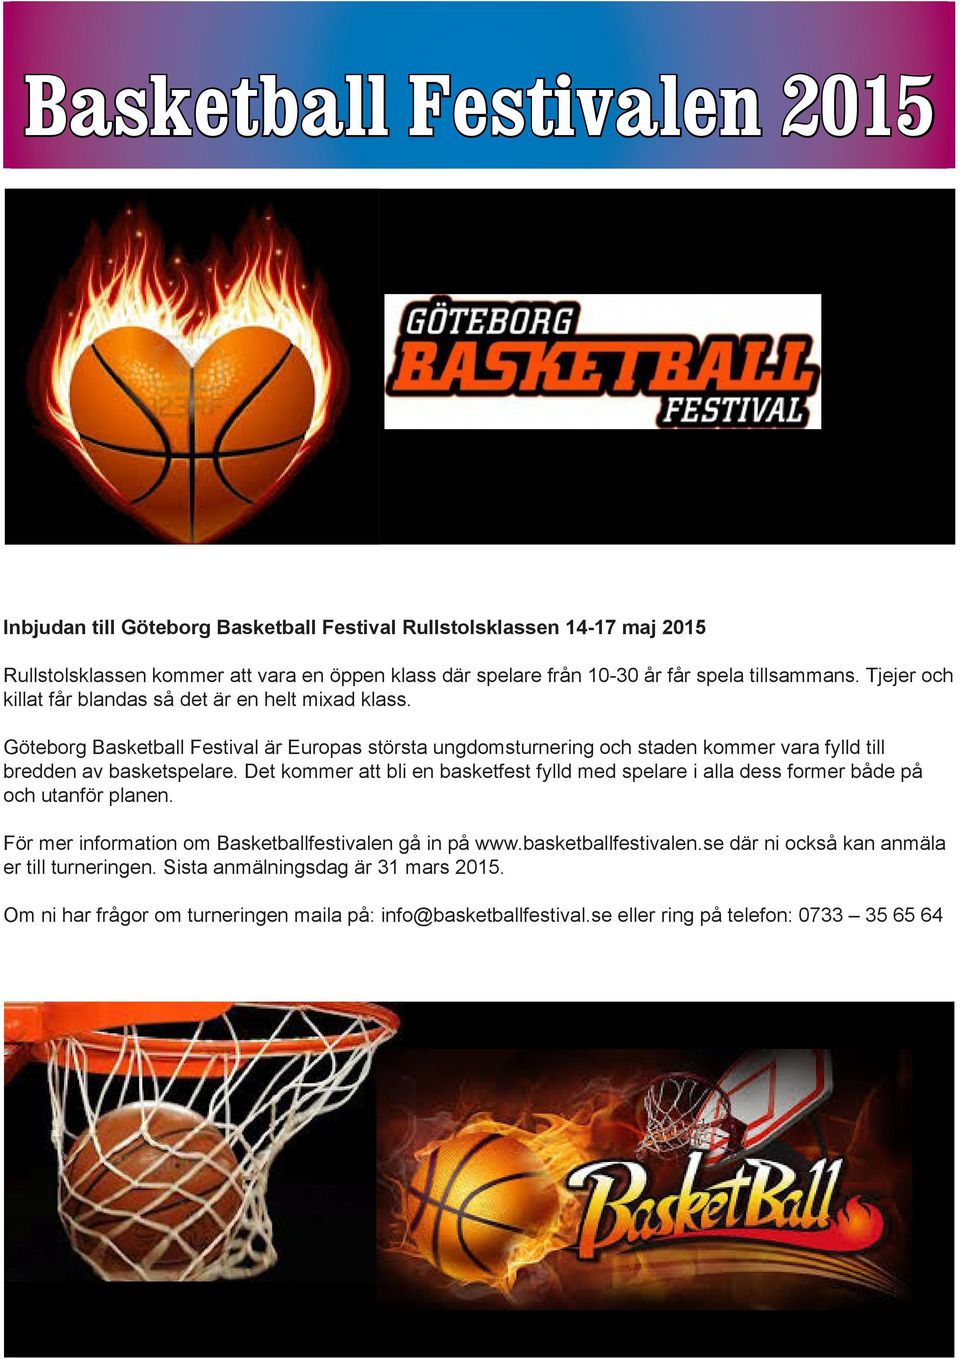 Göteborg Basketball Festival är Europas största ungdomsturnering och staden kommer vara fylld till bredden av basketspelare.